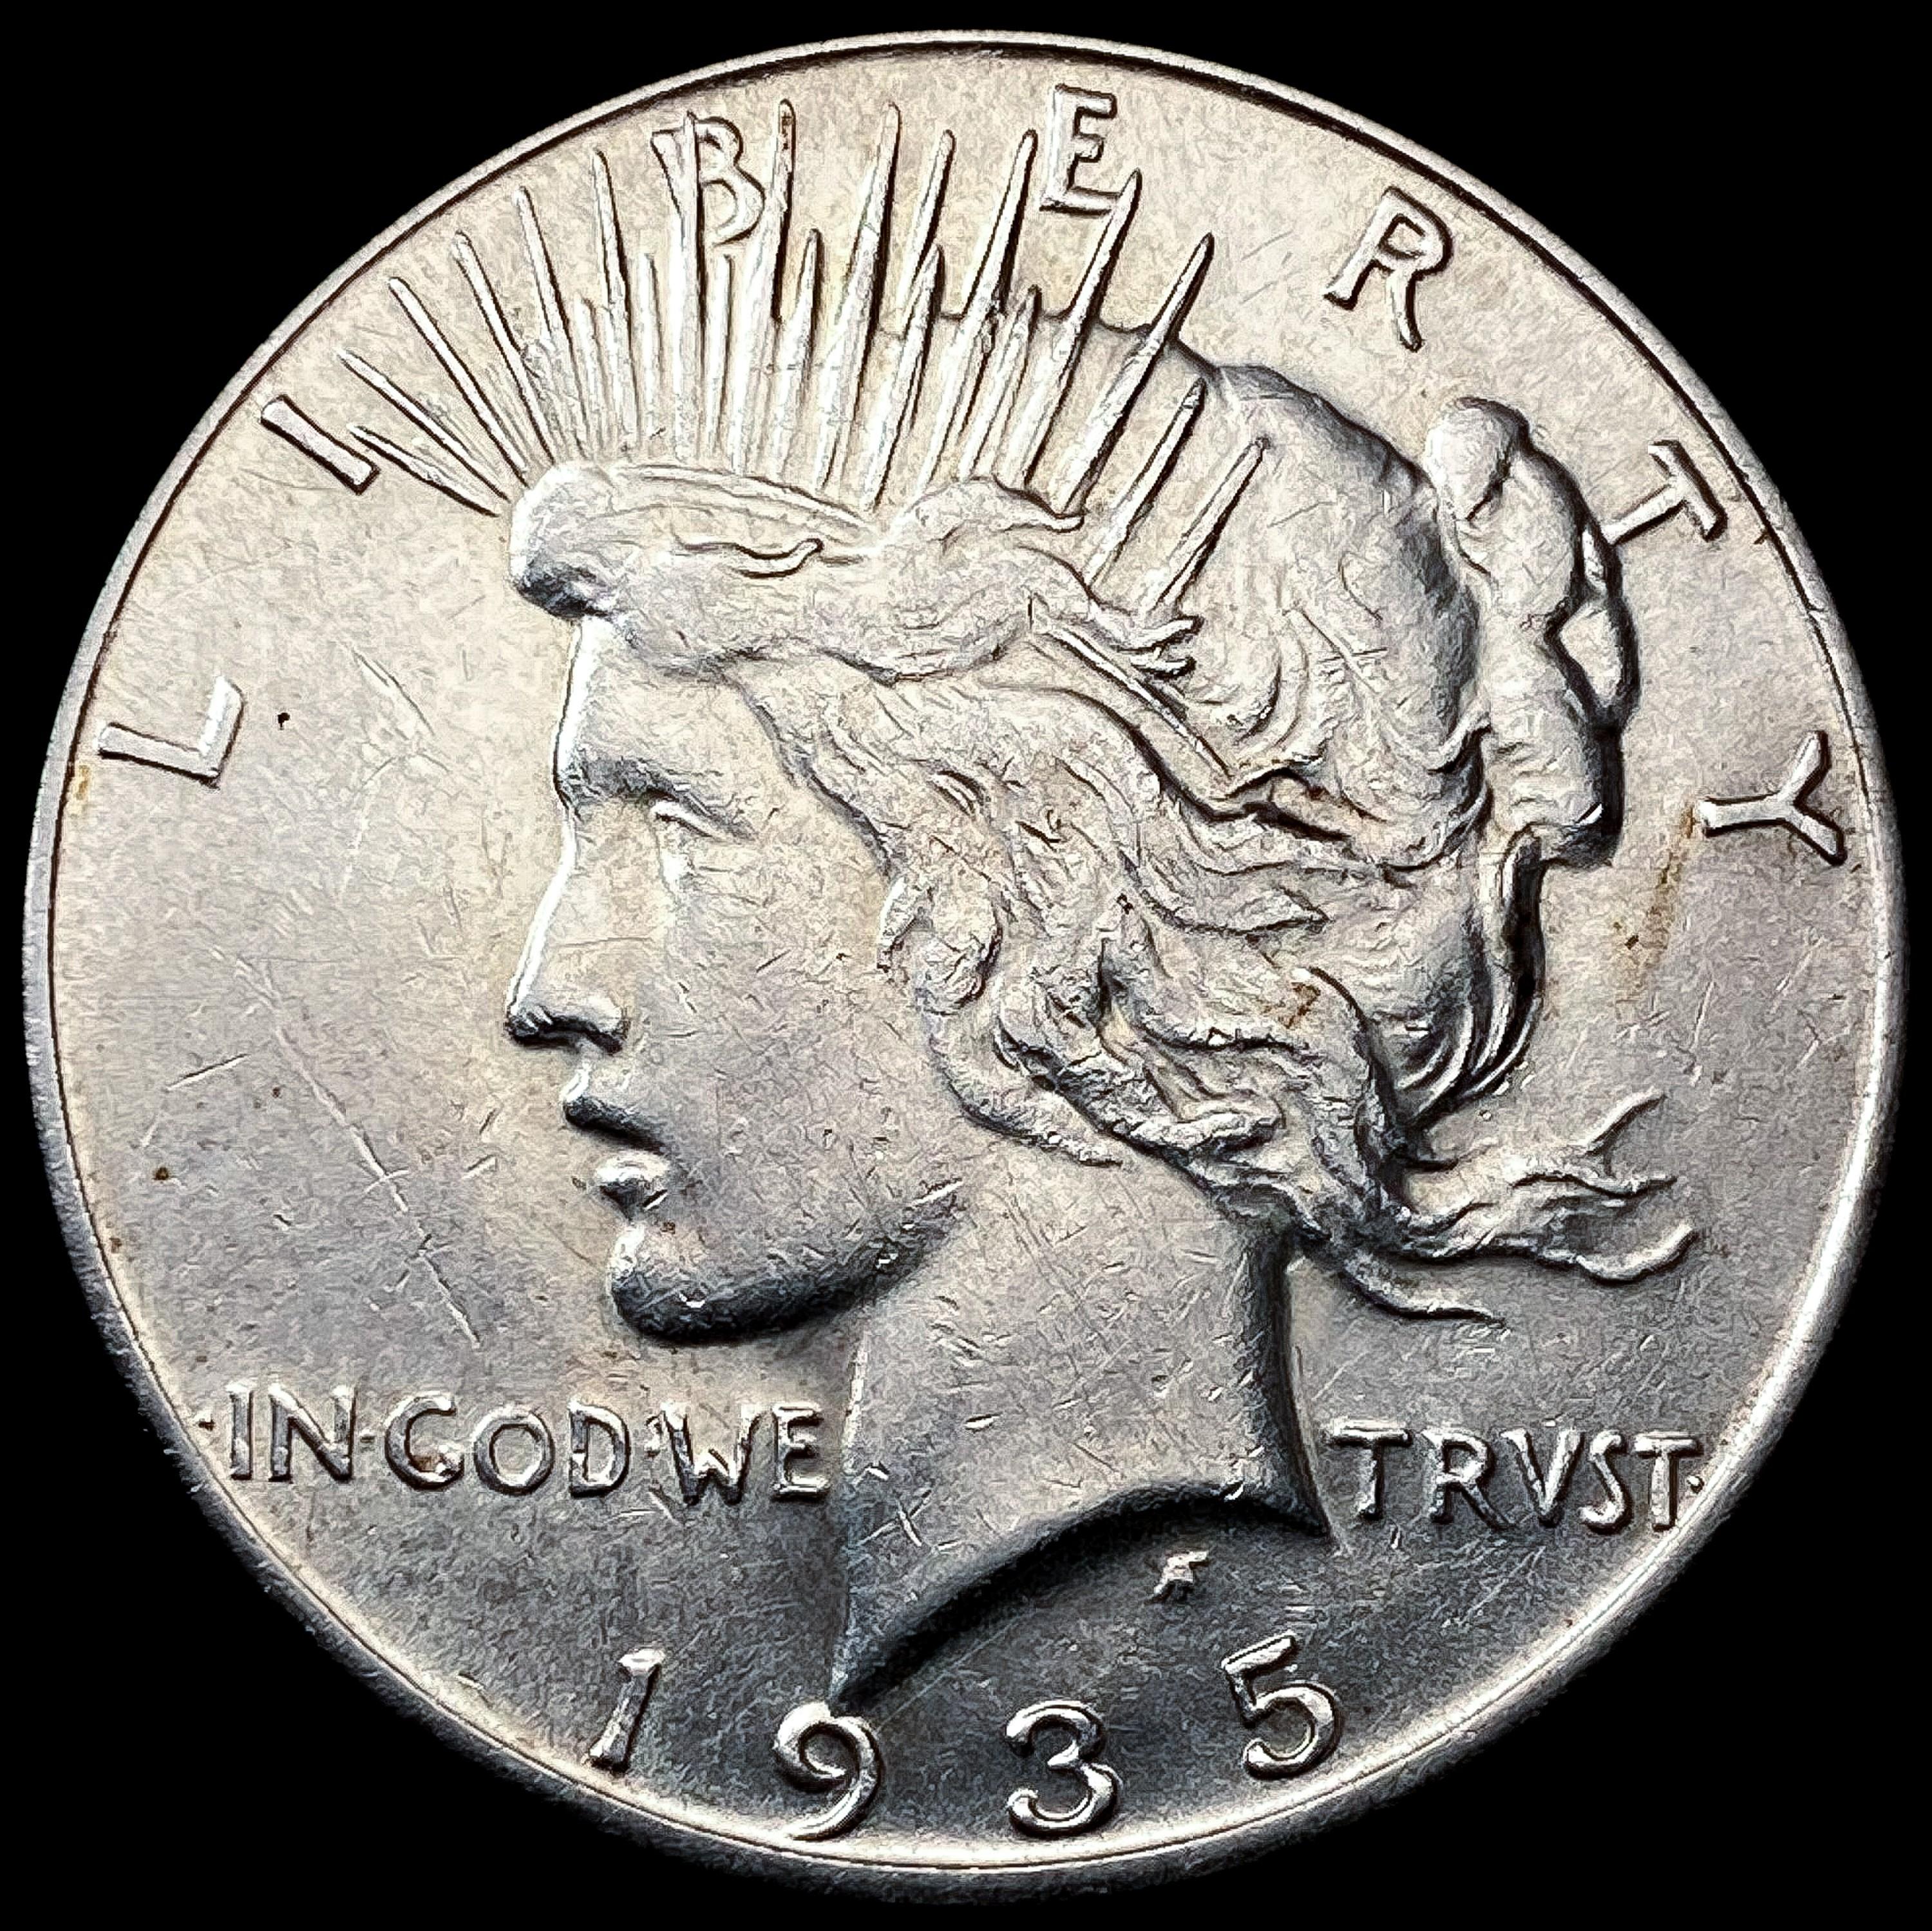 1935-S Silver Peace Dollar CHOICE AU